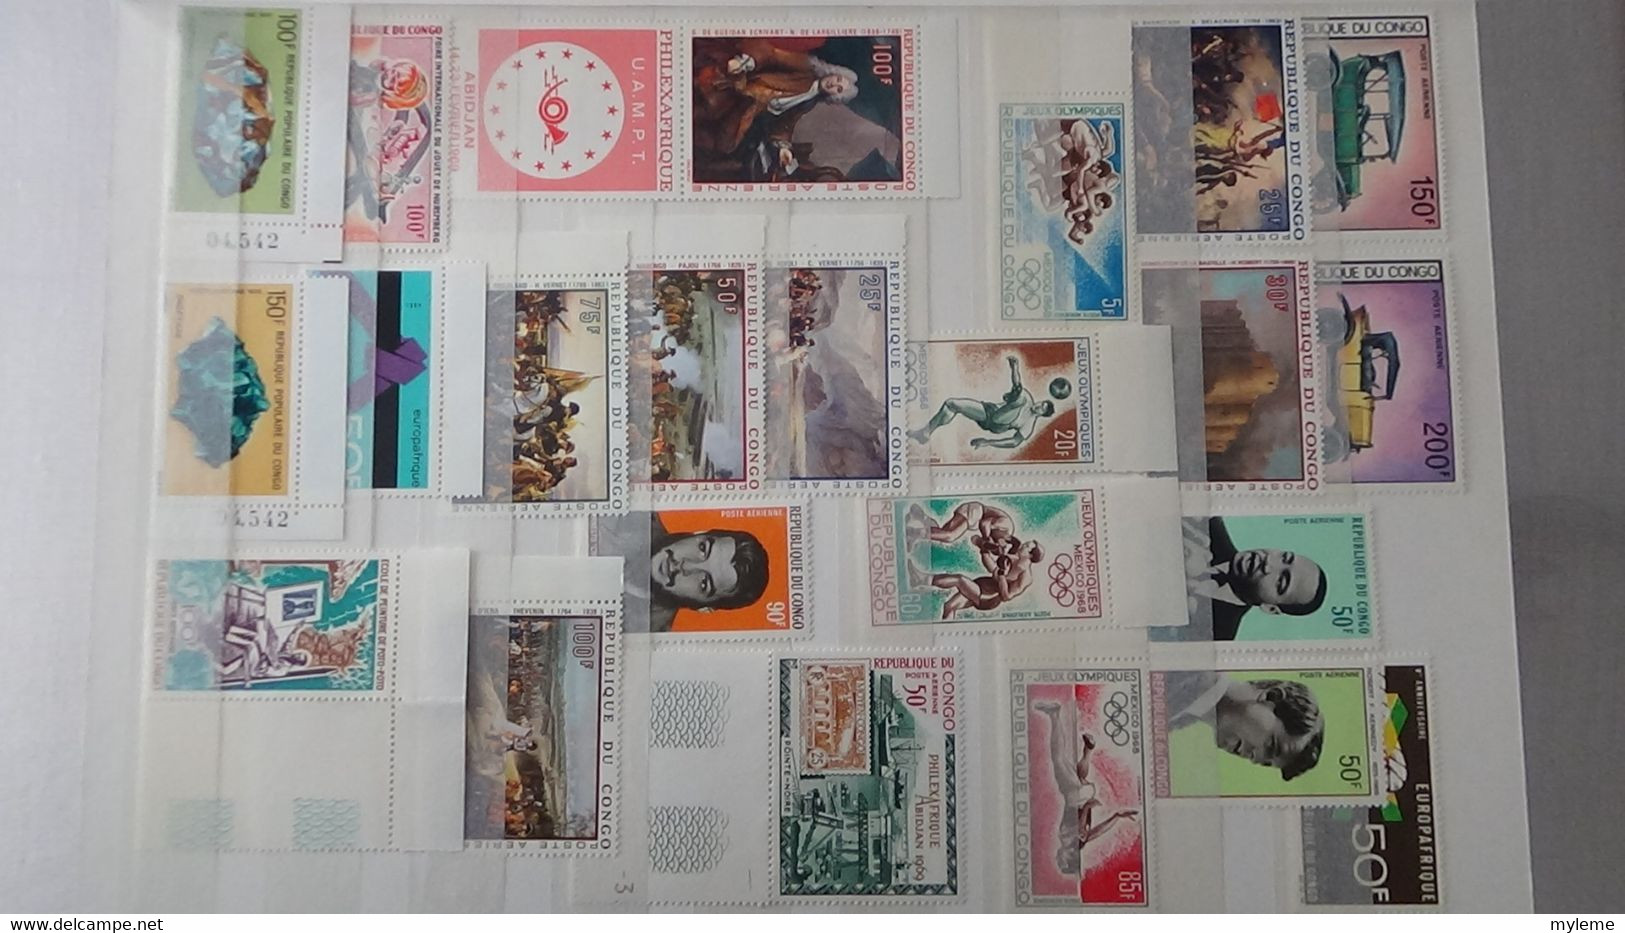 L43 Collection timbres ** de différents pays d'Afrique dont Congo, Centrafrique, Dahomey, Gabon ... Voir commentaires